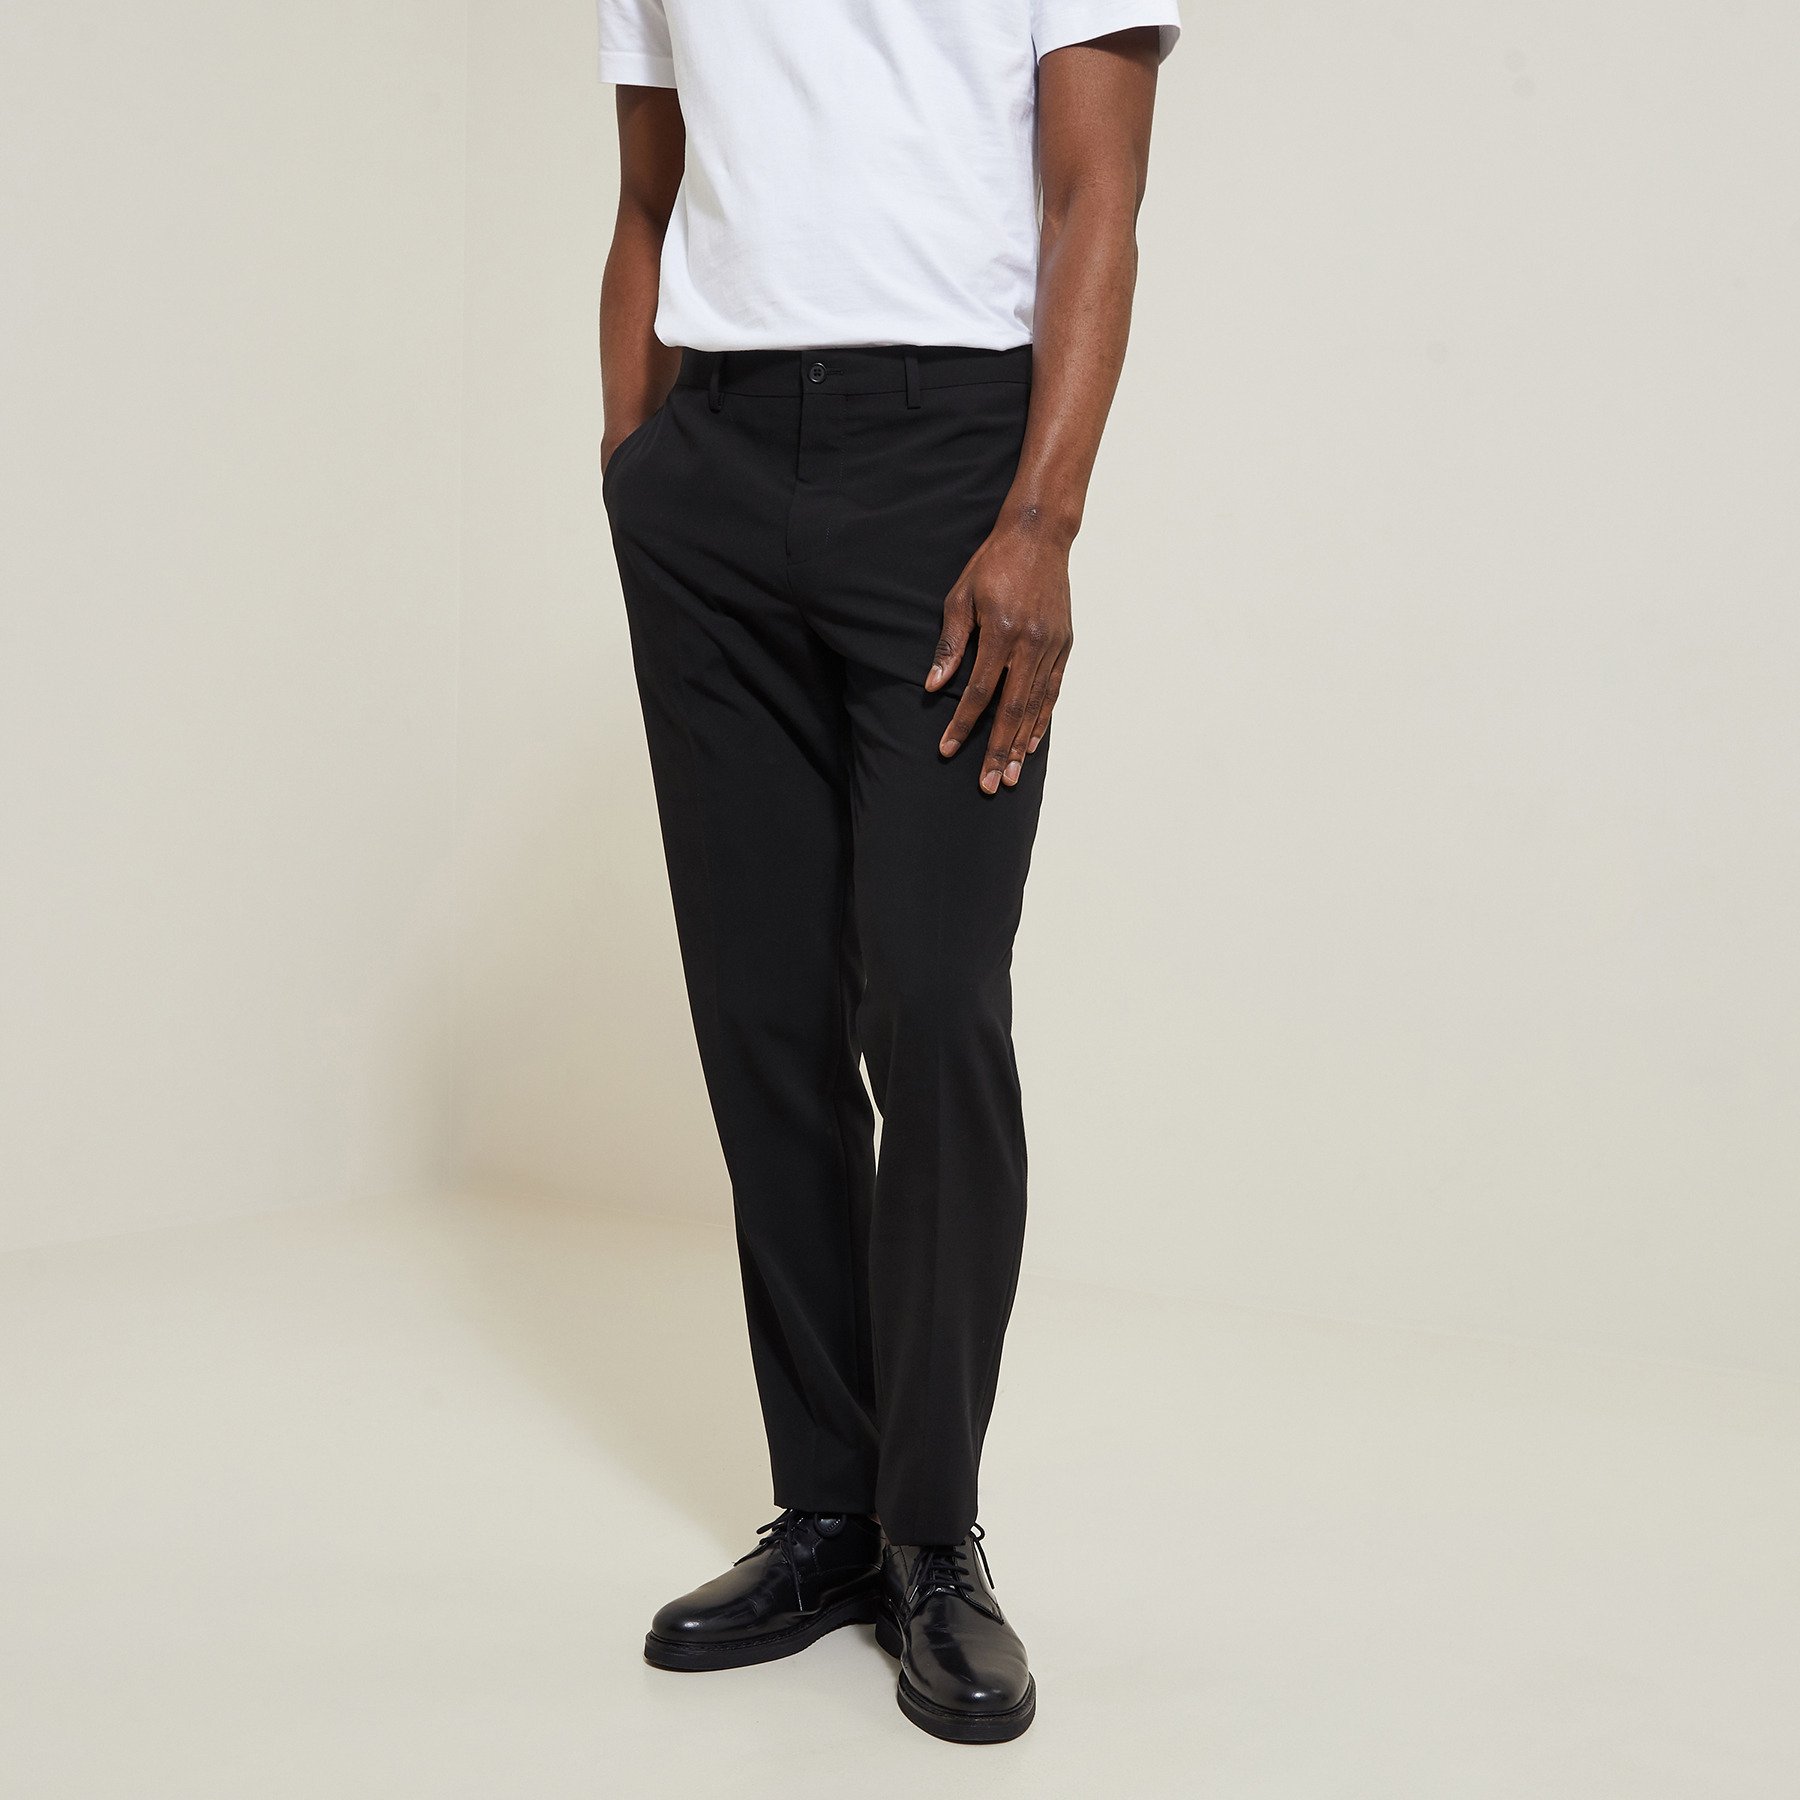 Pantalon de costume confort Noir 34 70% Polyester, 25% Viscose, 5% Elasthanne Homme